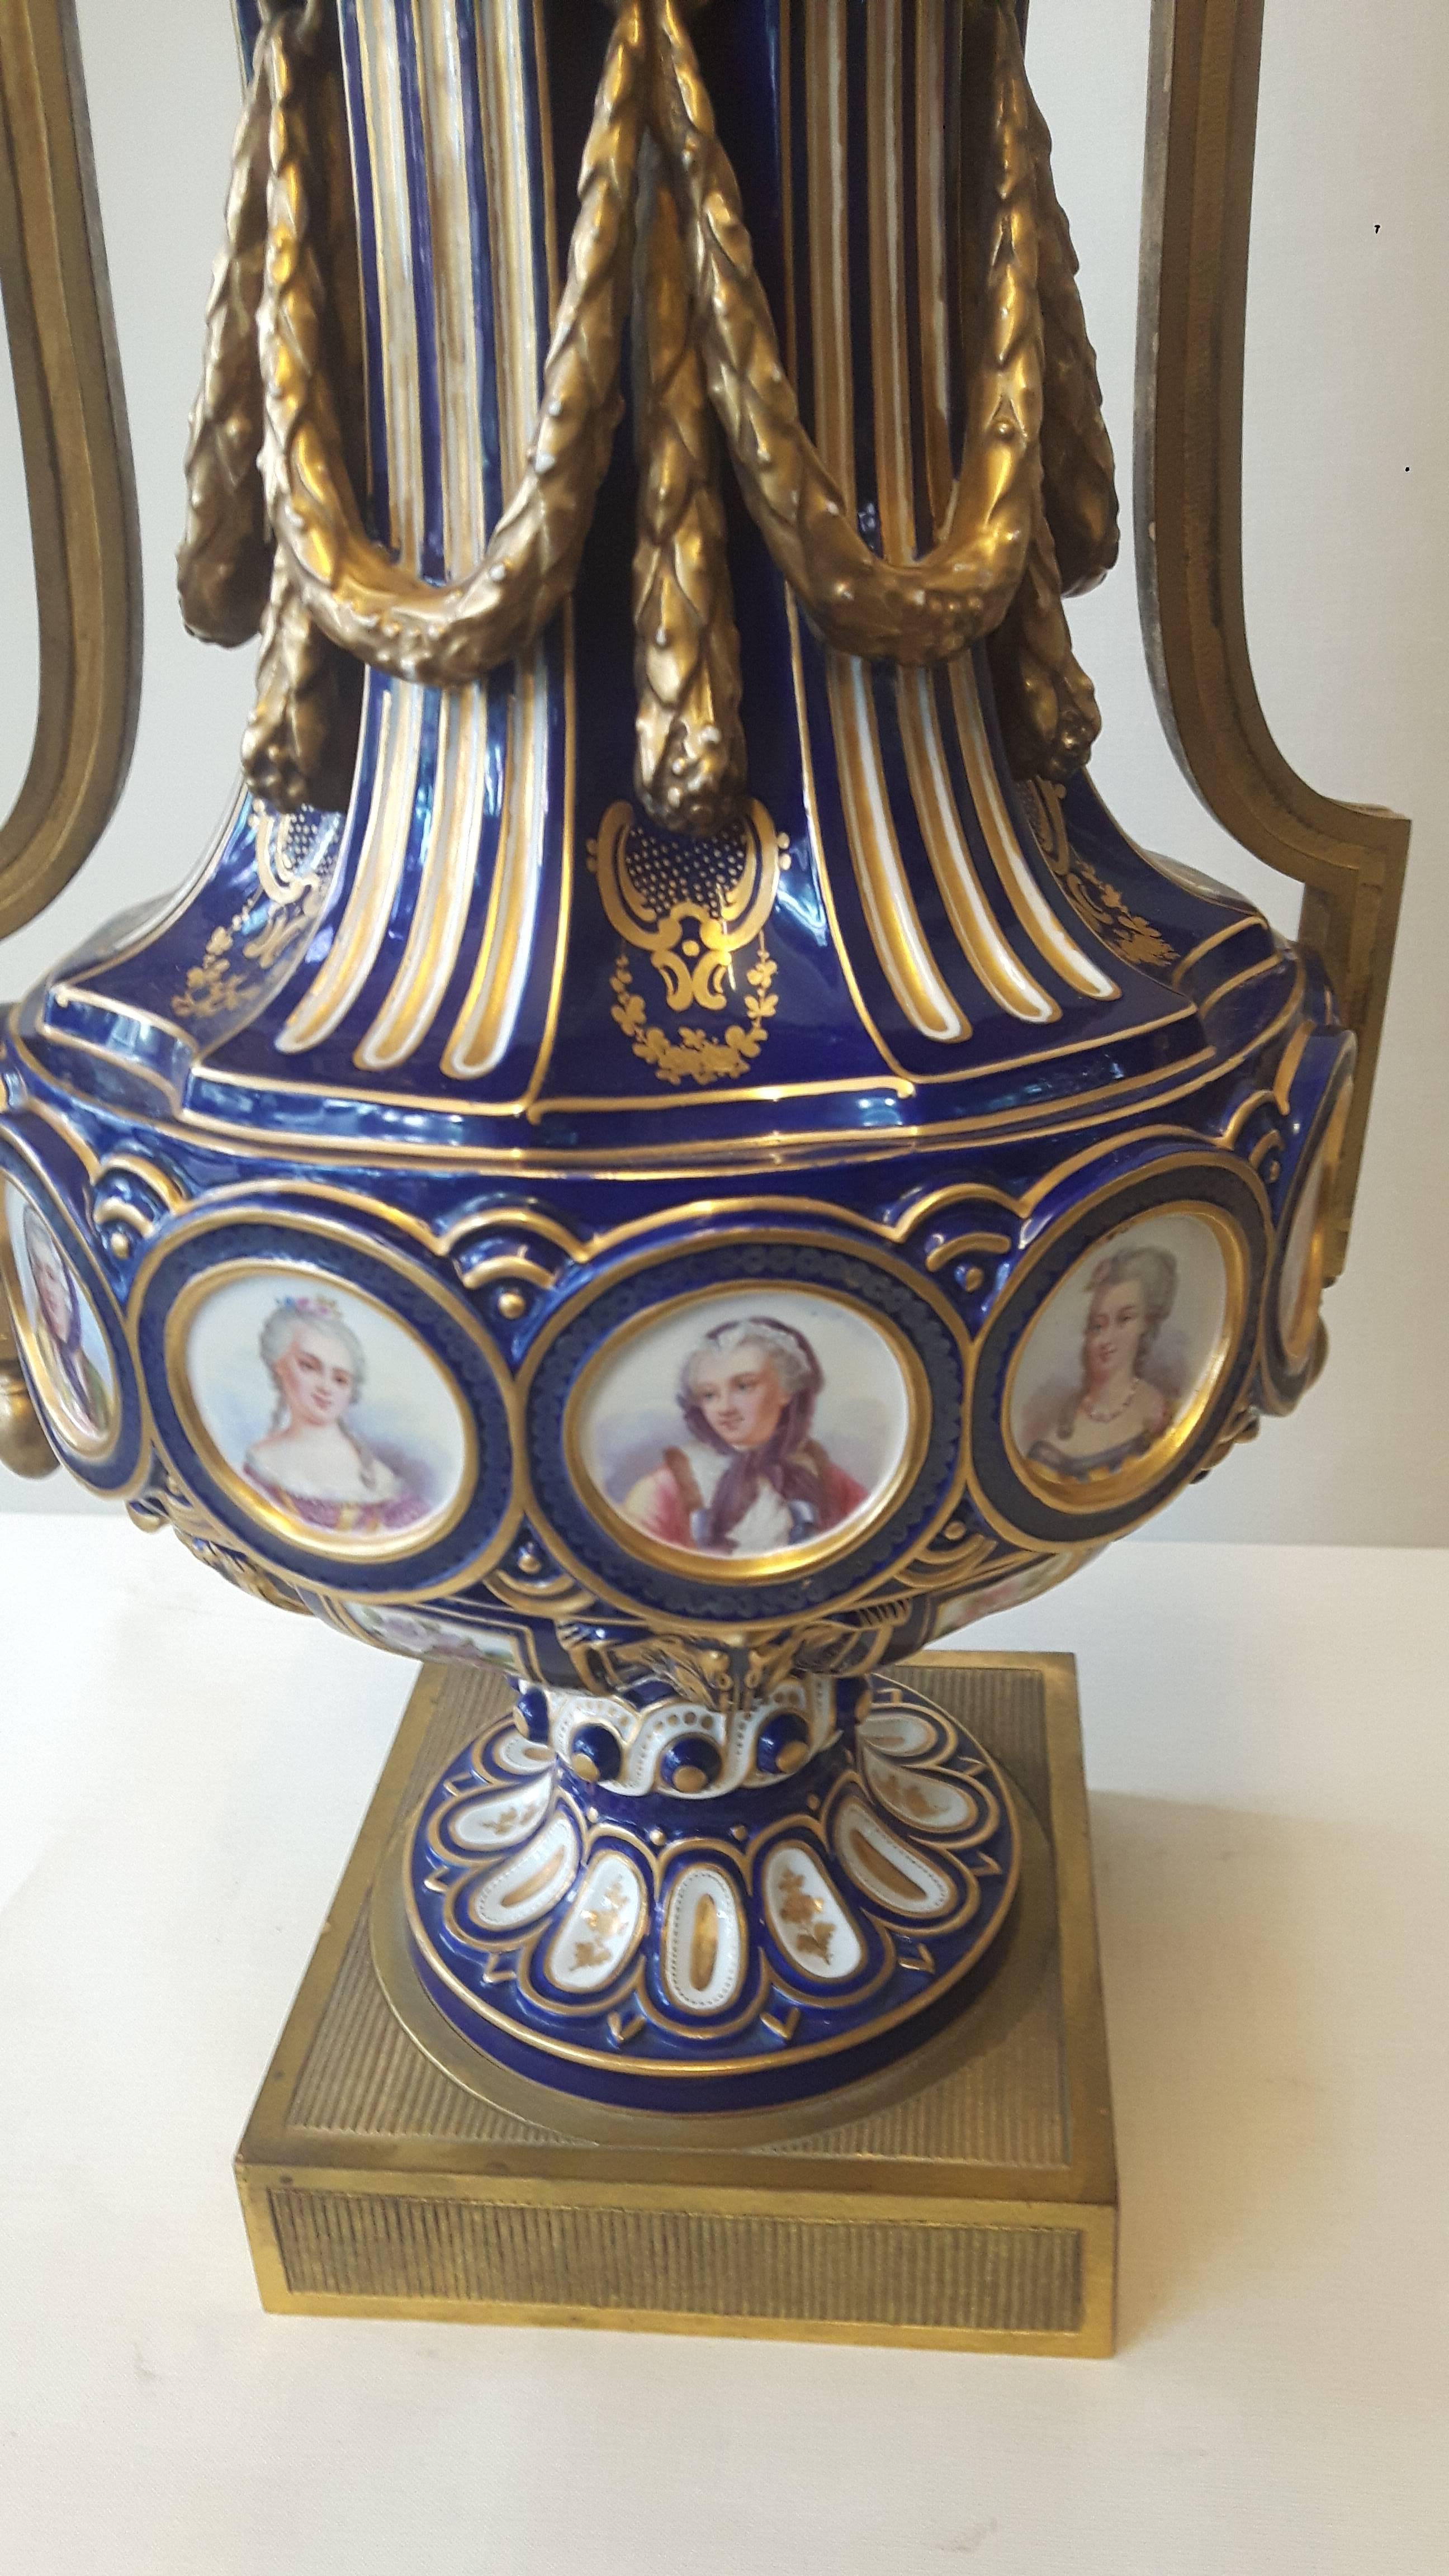 Une importante paire de vases de style Louis XIV Sèvres, décorés à la main avec des cartouches du roi, de sa famille et de ses maîtresses. Les couvercles sont moulés en couronne ; des guirlandes en porcelaine moulées à la main embellissent le corps,